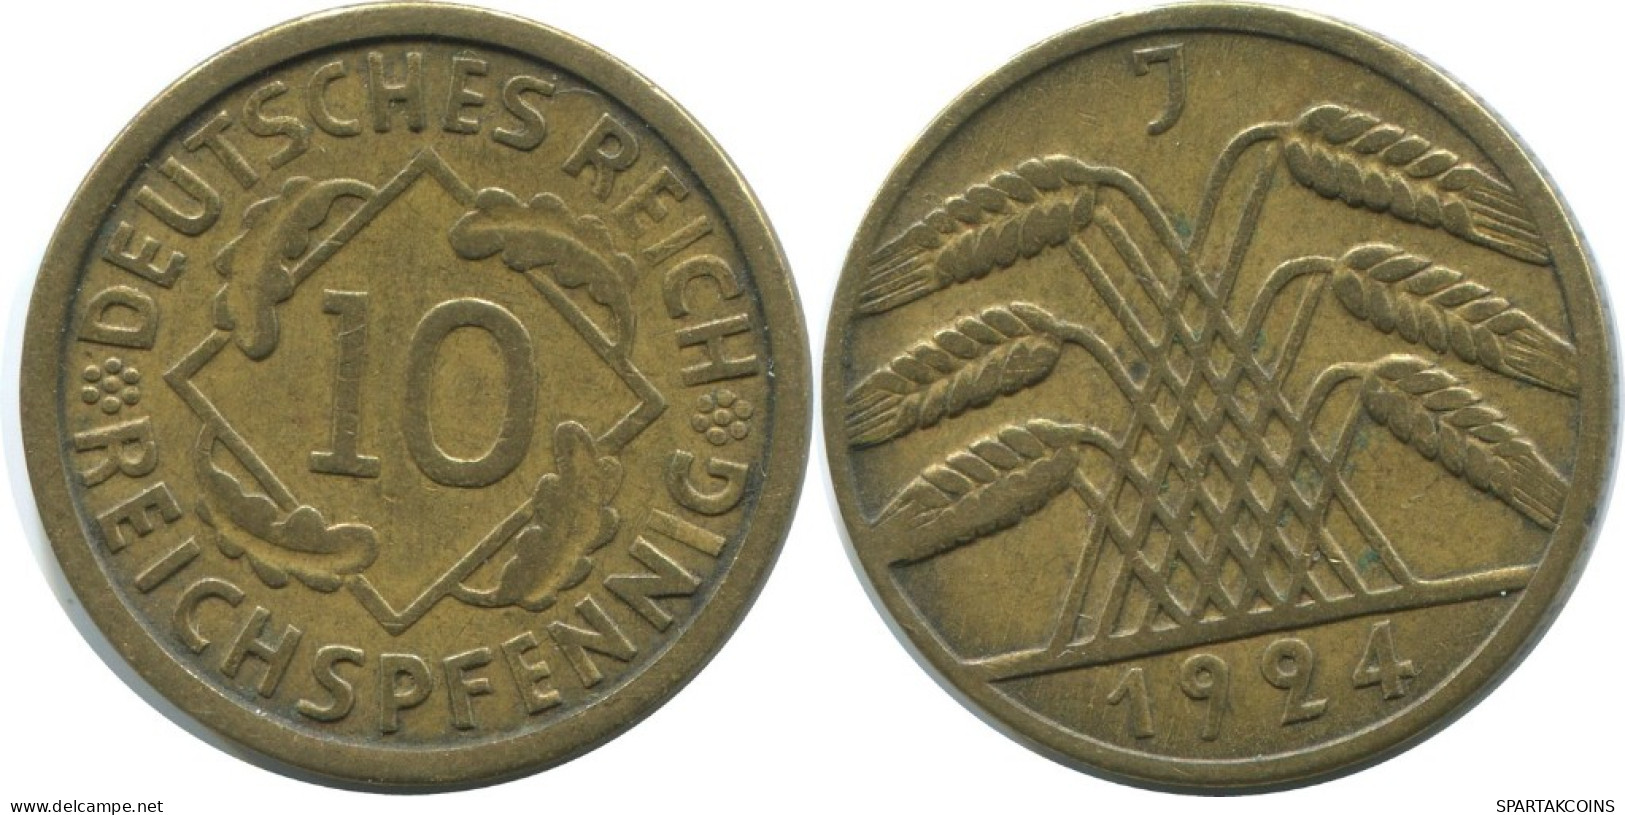 10 REICHSPFENNIG 1924 J DEUTSCHLAND Münze GERMANY #AE360.D.A - 10 Rentenpfennig & 10 Reichspfennig